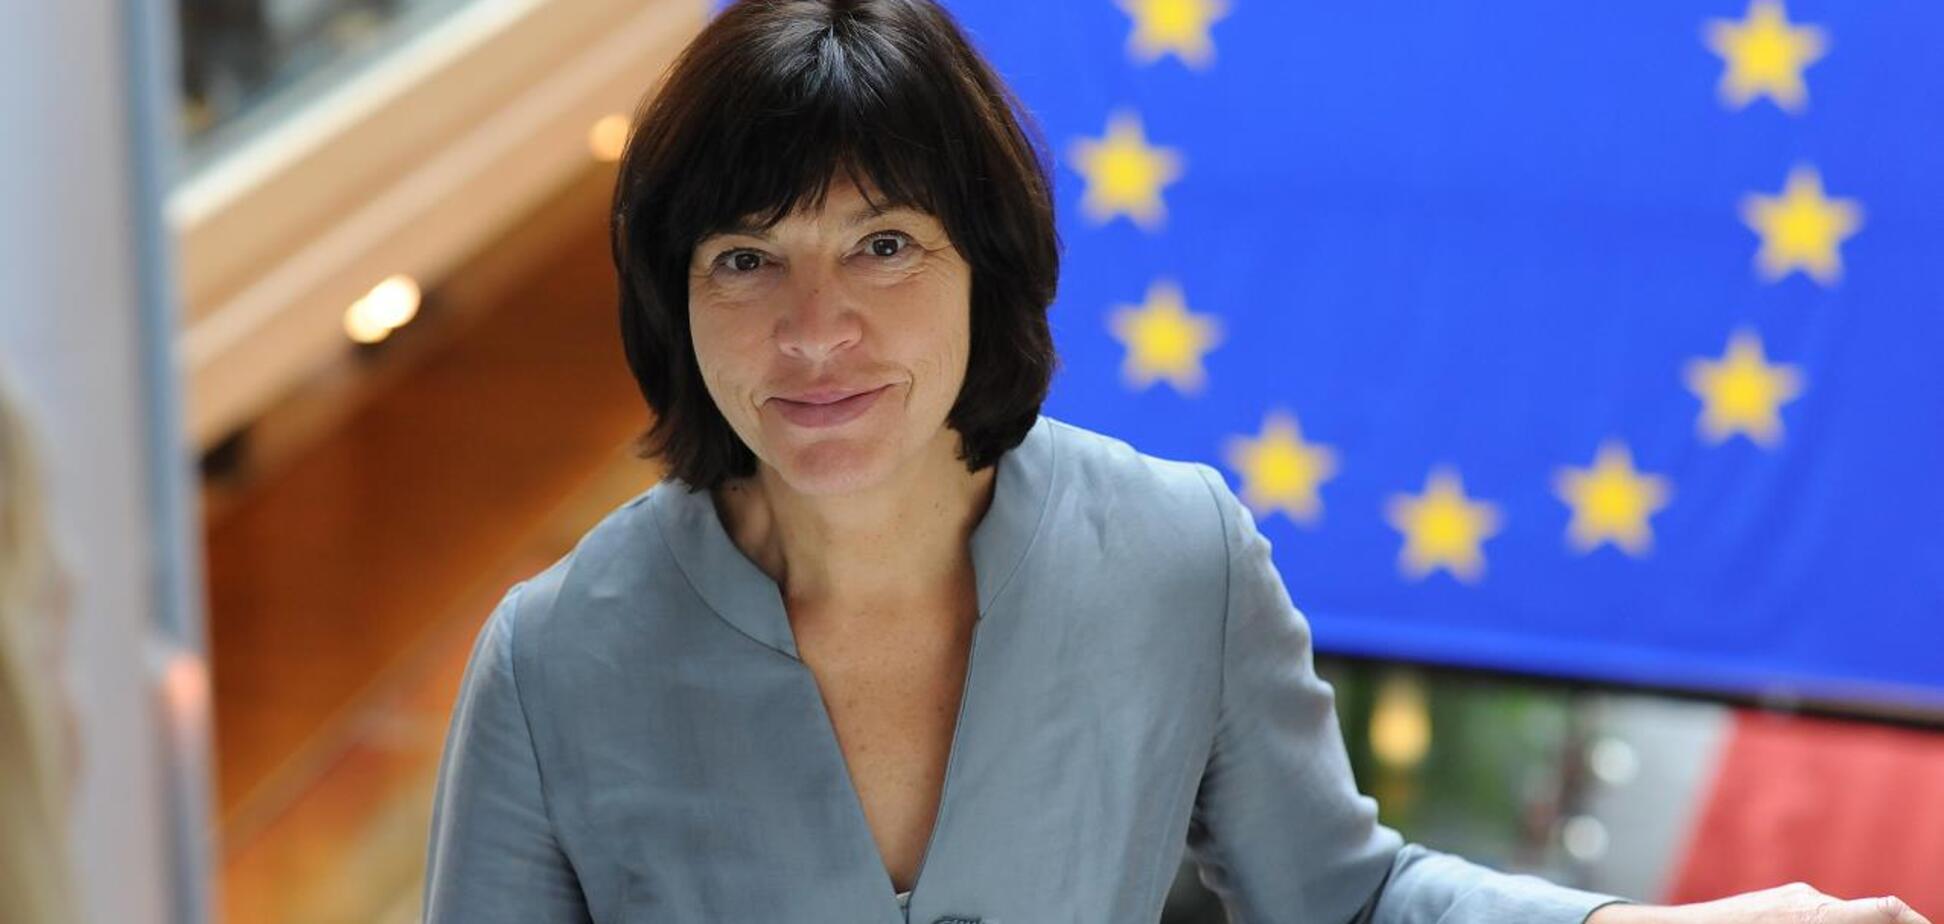 Представителя Европы 'развели' в Украине из-за ЛГБТ